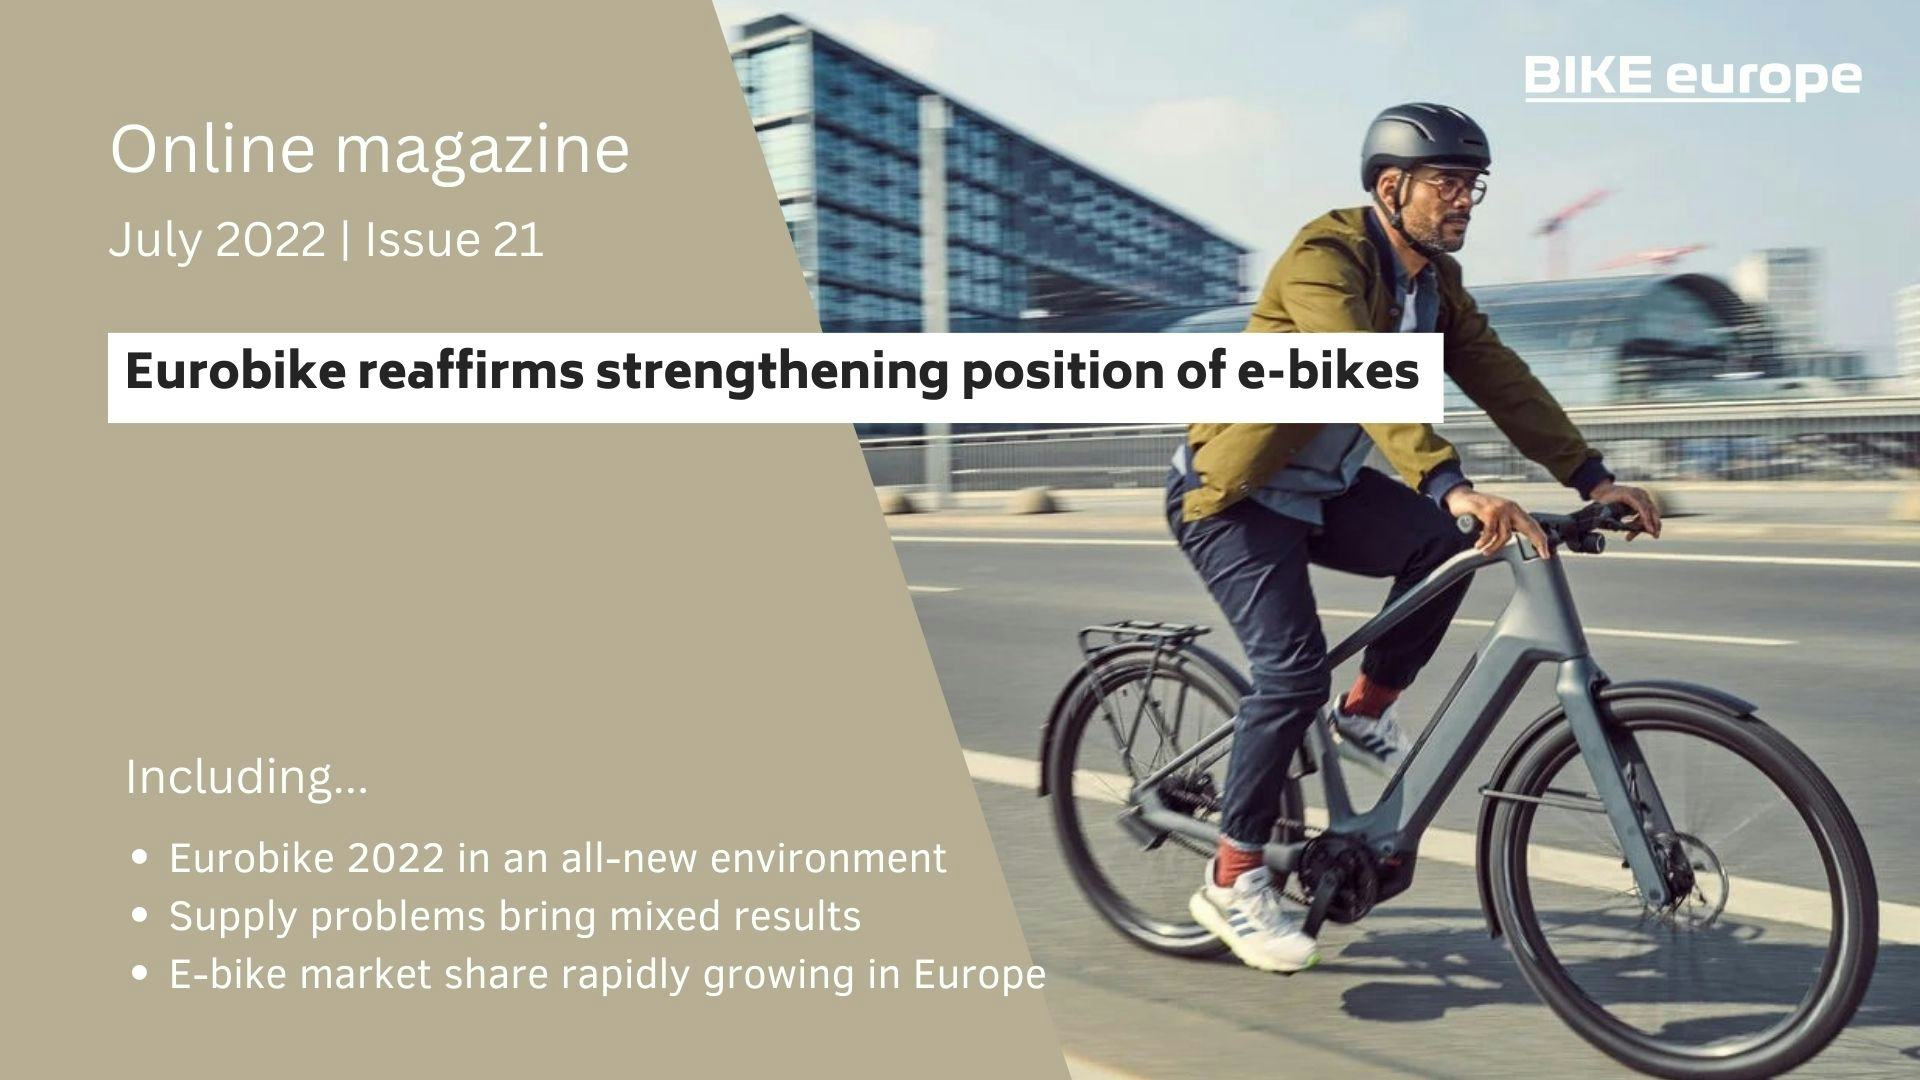 Online Magazine: Eurobike reaffirms strengthening position of e-bikes